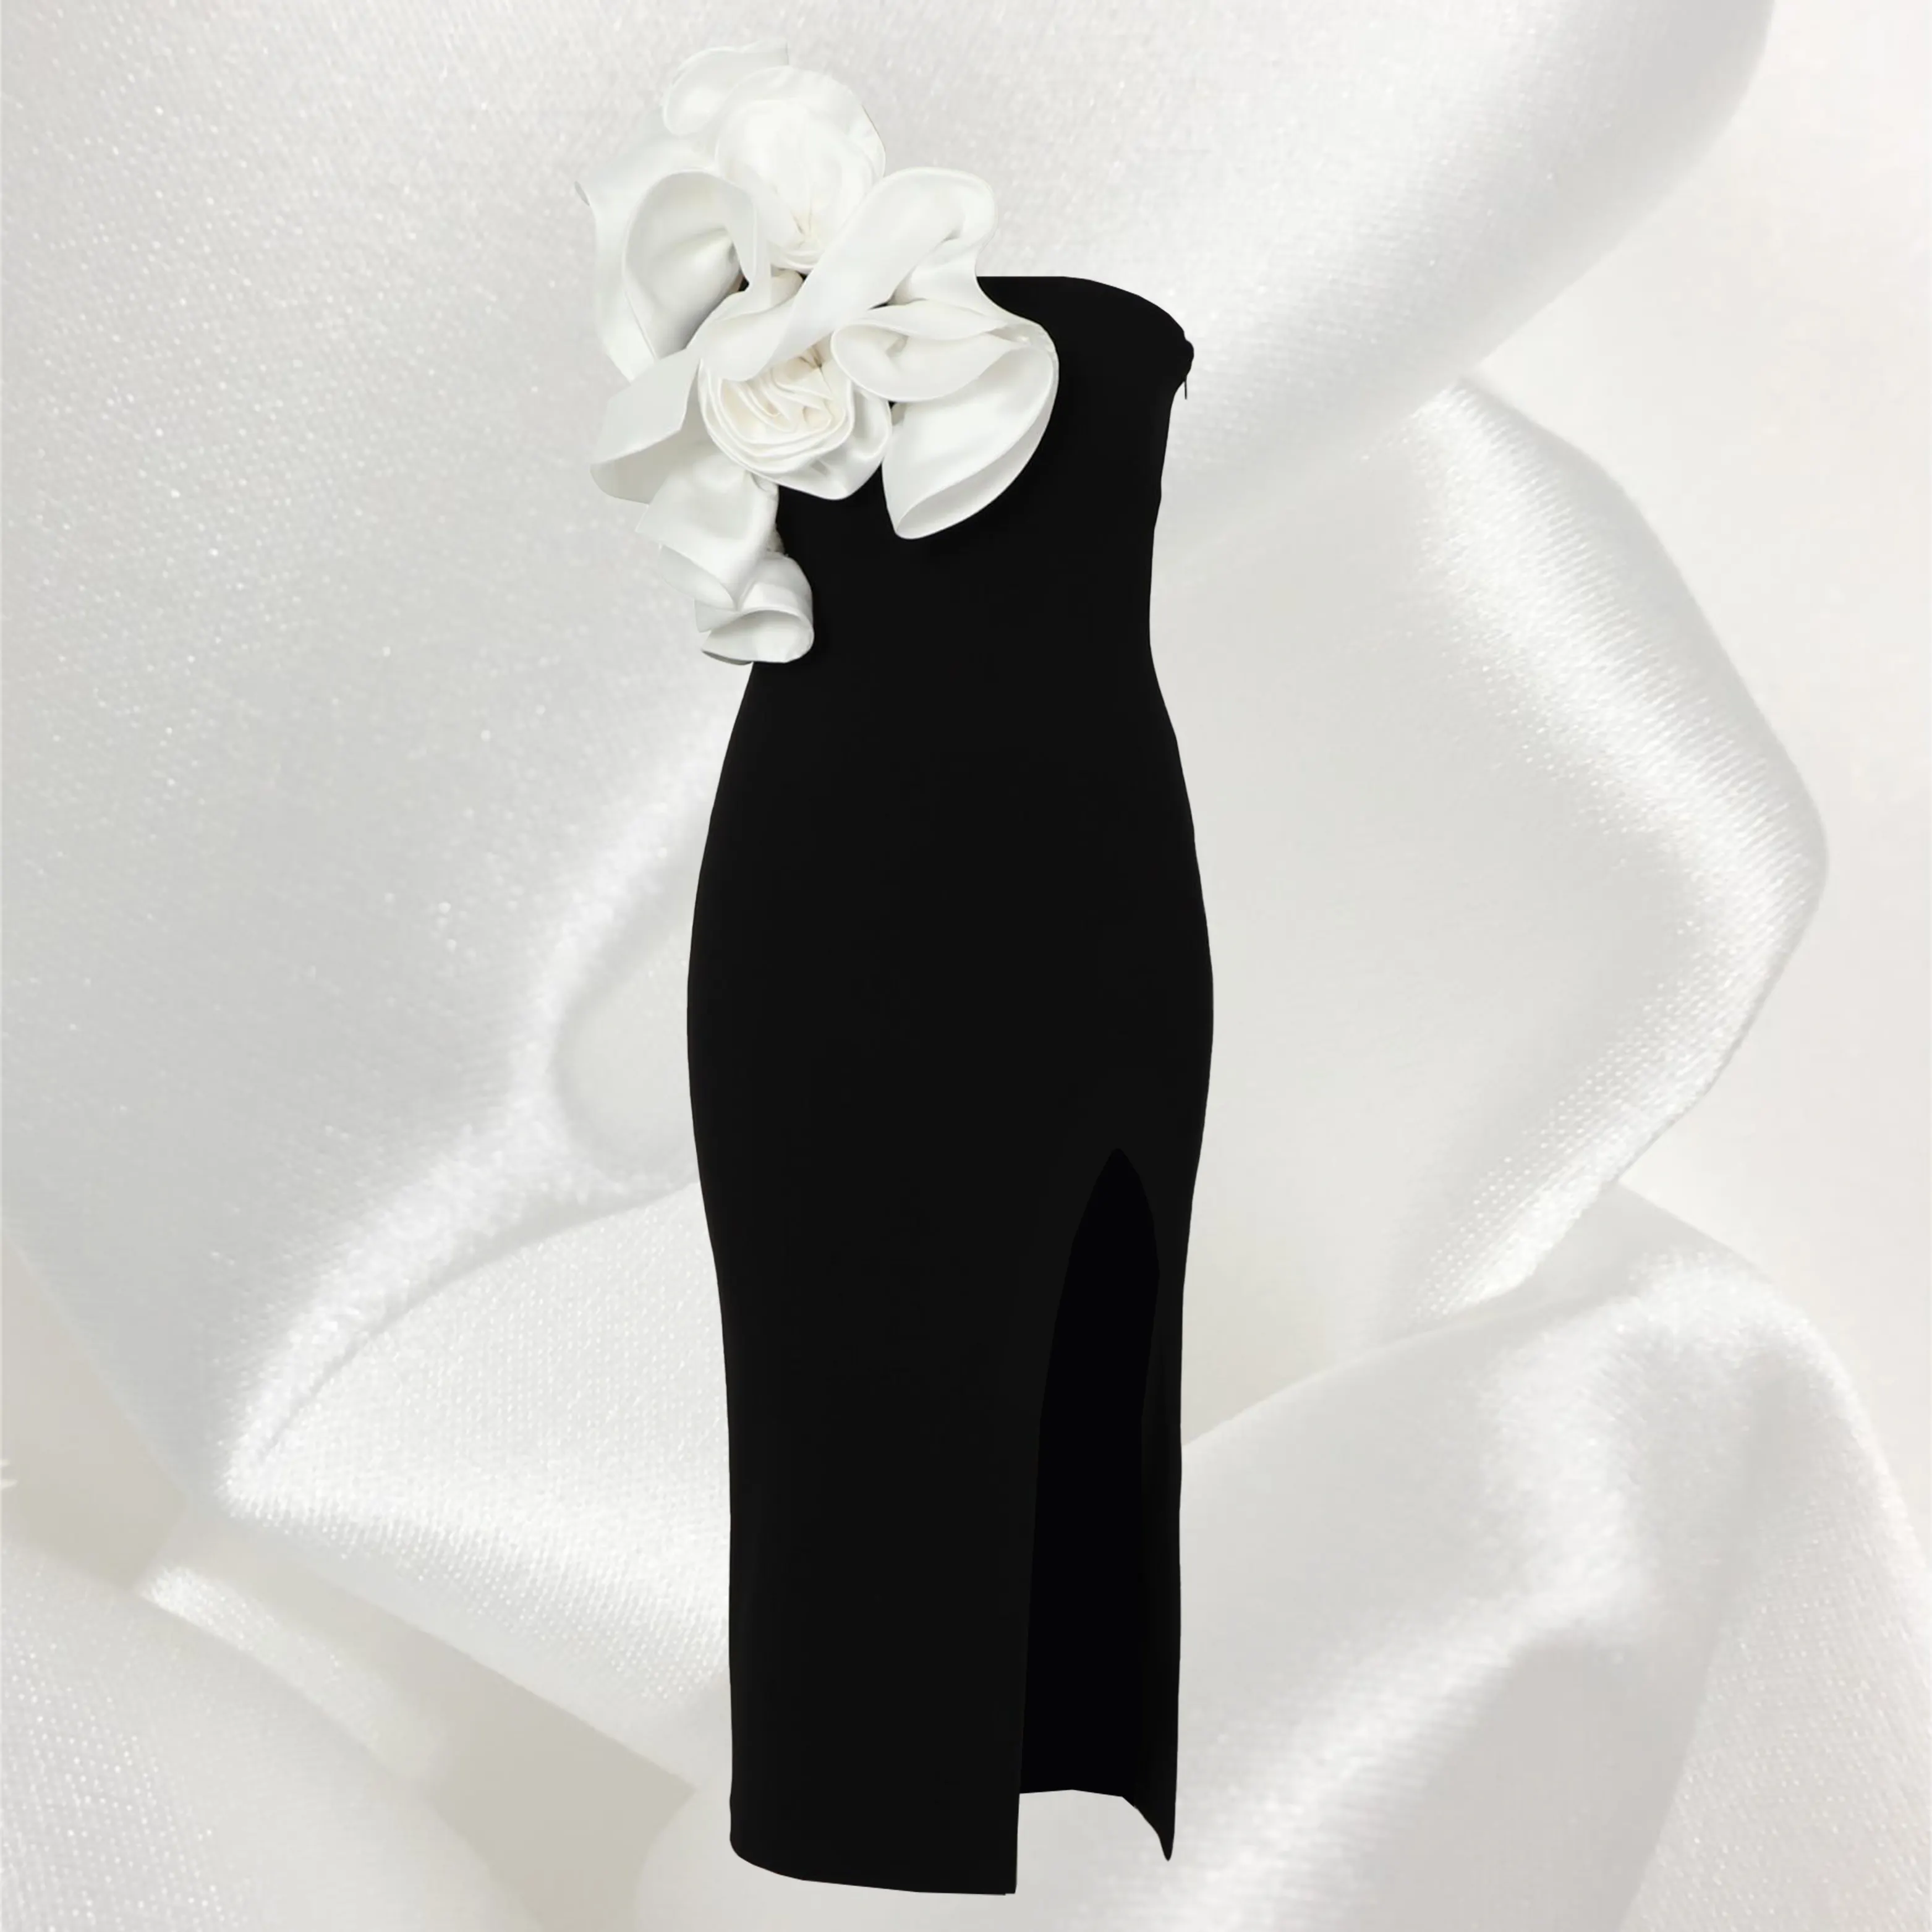 नवीनतम डिज़ाइन परिधान फैशनेबल प्रसंस्करण सेवाएँ महिलाओं के कपड़े कैज़ुअल समर पार्टी स्लिम प्रोम इवनिंग ड्रेस